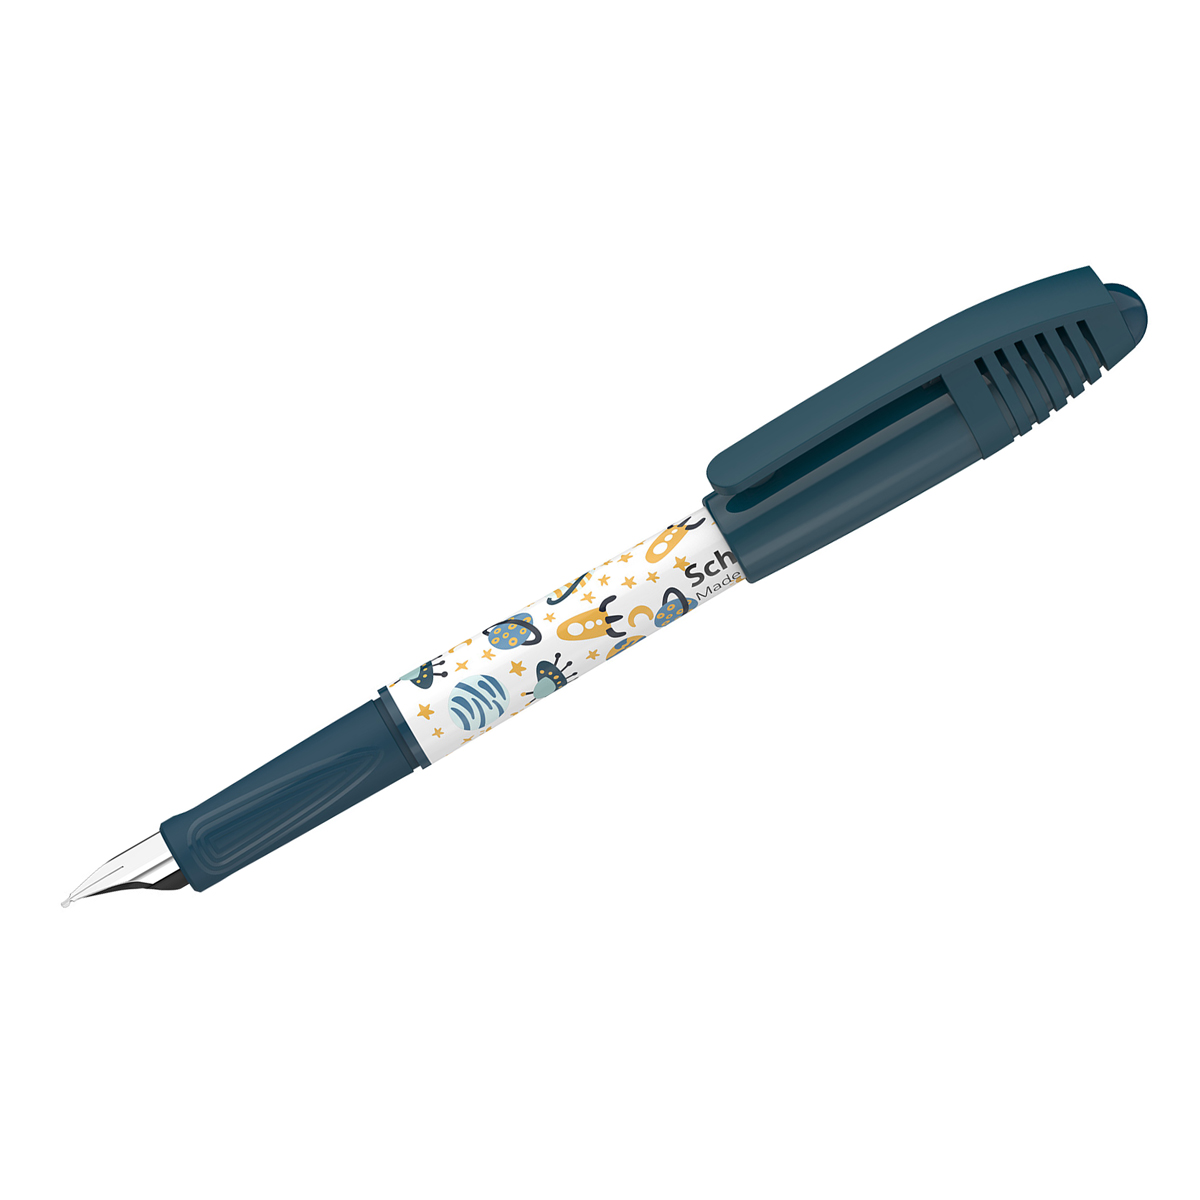 Ручка перьевая Schneider Zippi Space синяя, 1 картридж, грип, темно-синий-белый корпус